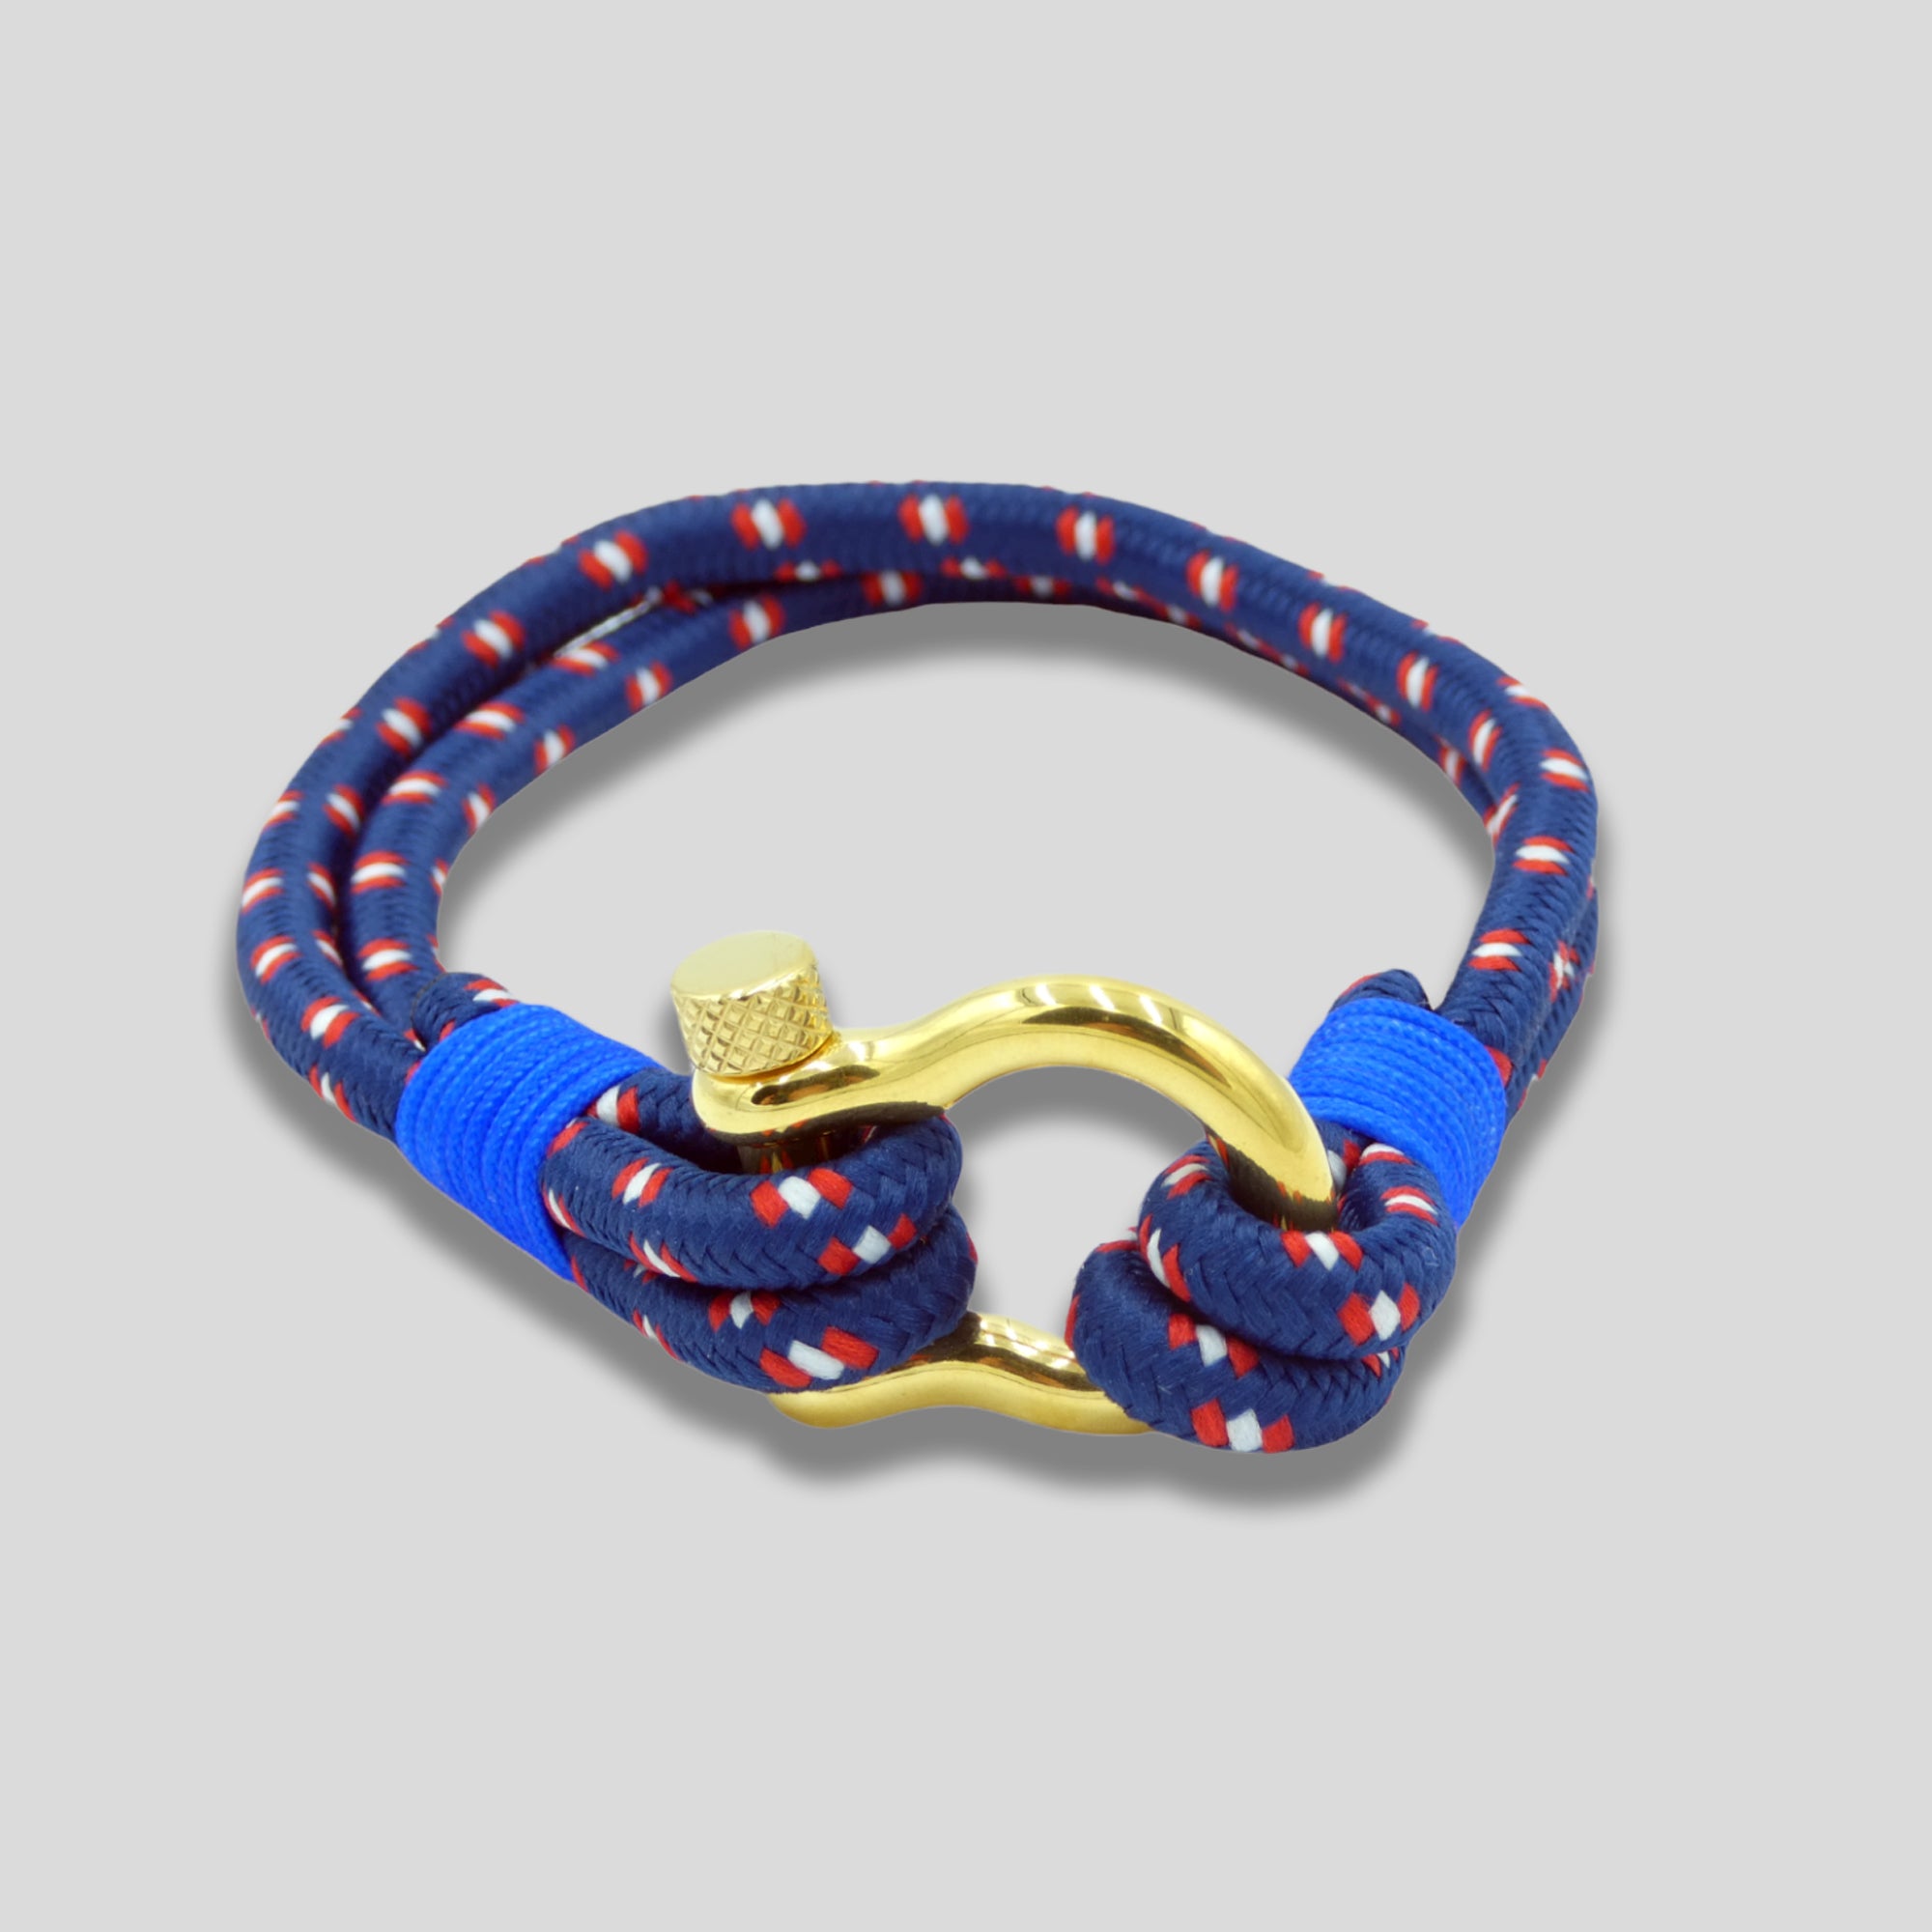 Corde en nylon bleu avec manille dorée